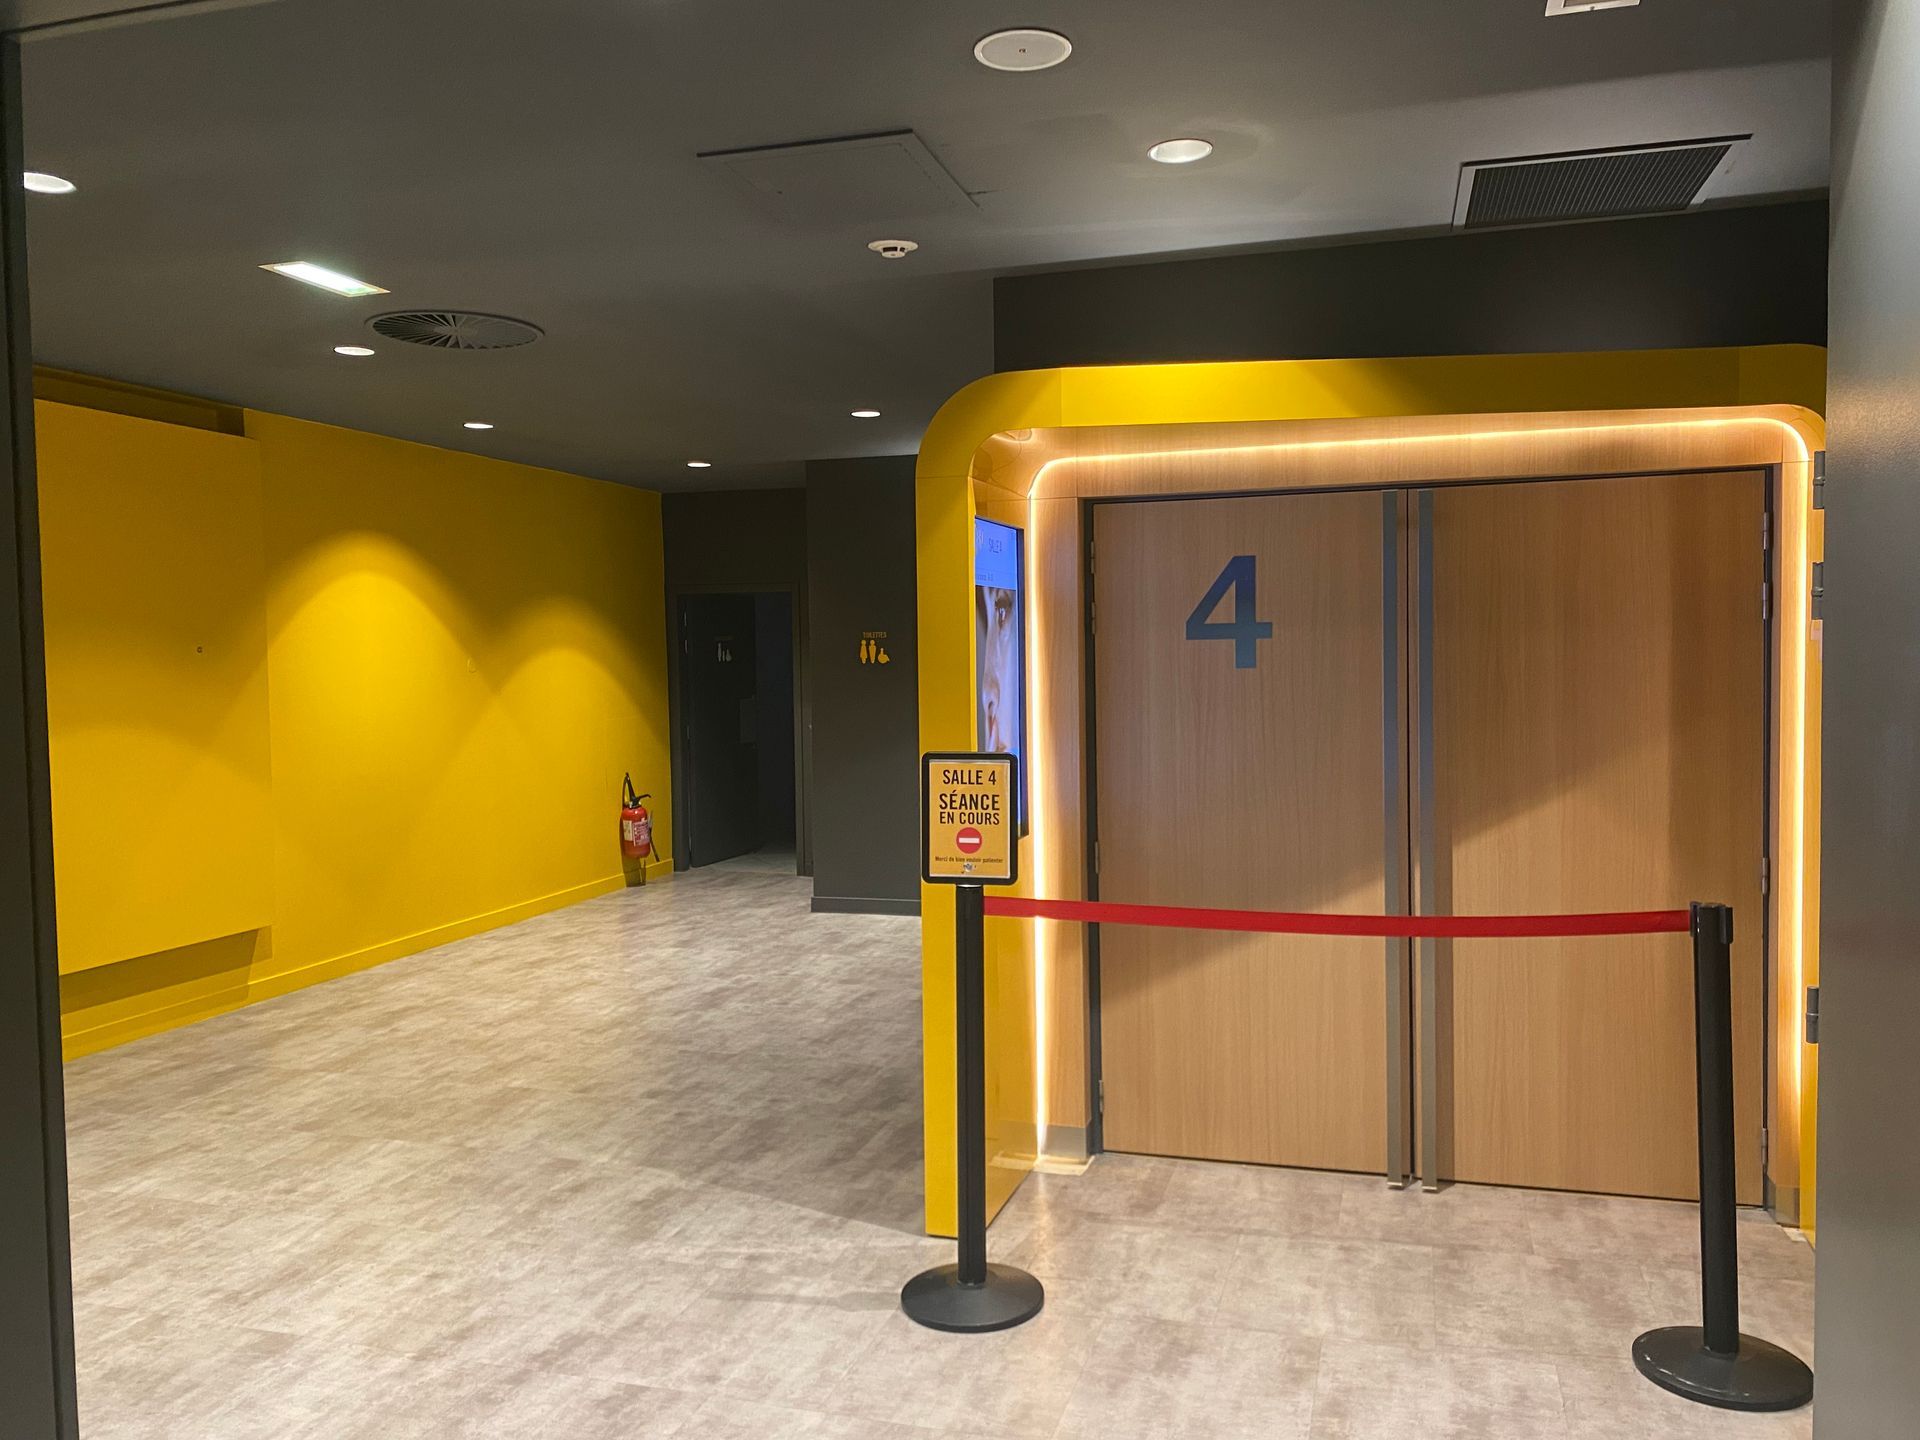 Peinture jaune dans un couloir desservant les salles de cinéma